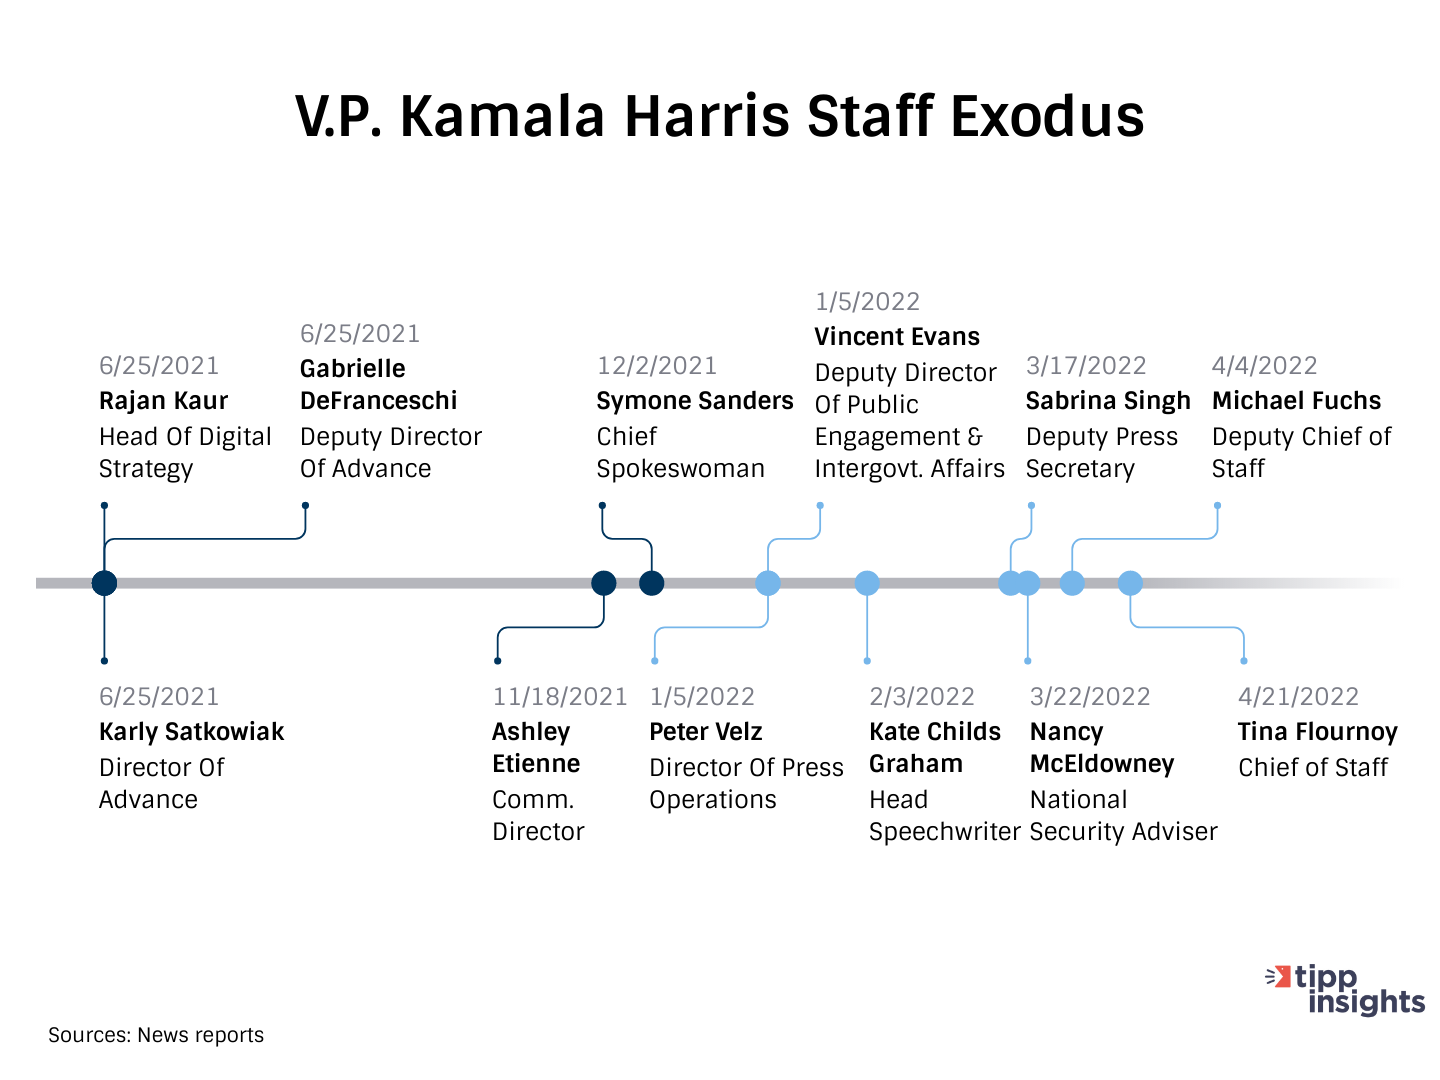 Kamala Harris - Staff Exodus